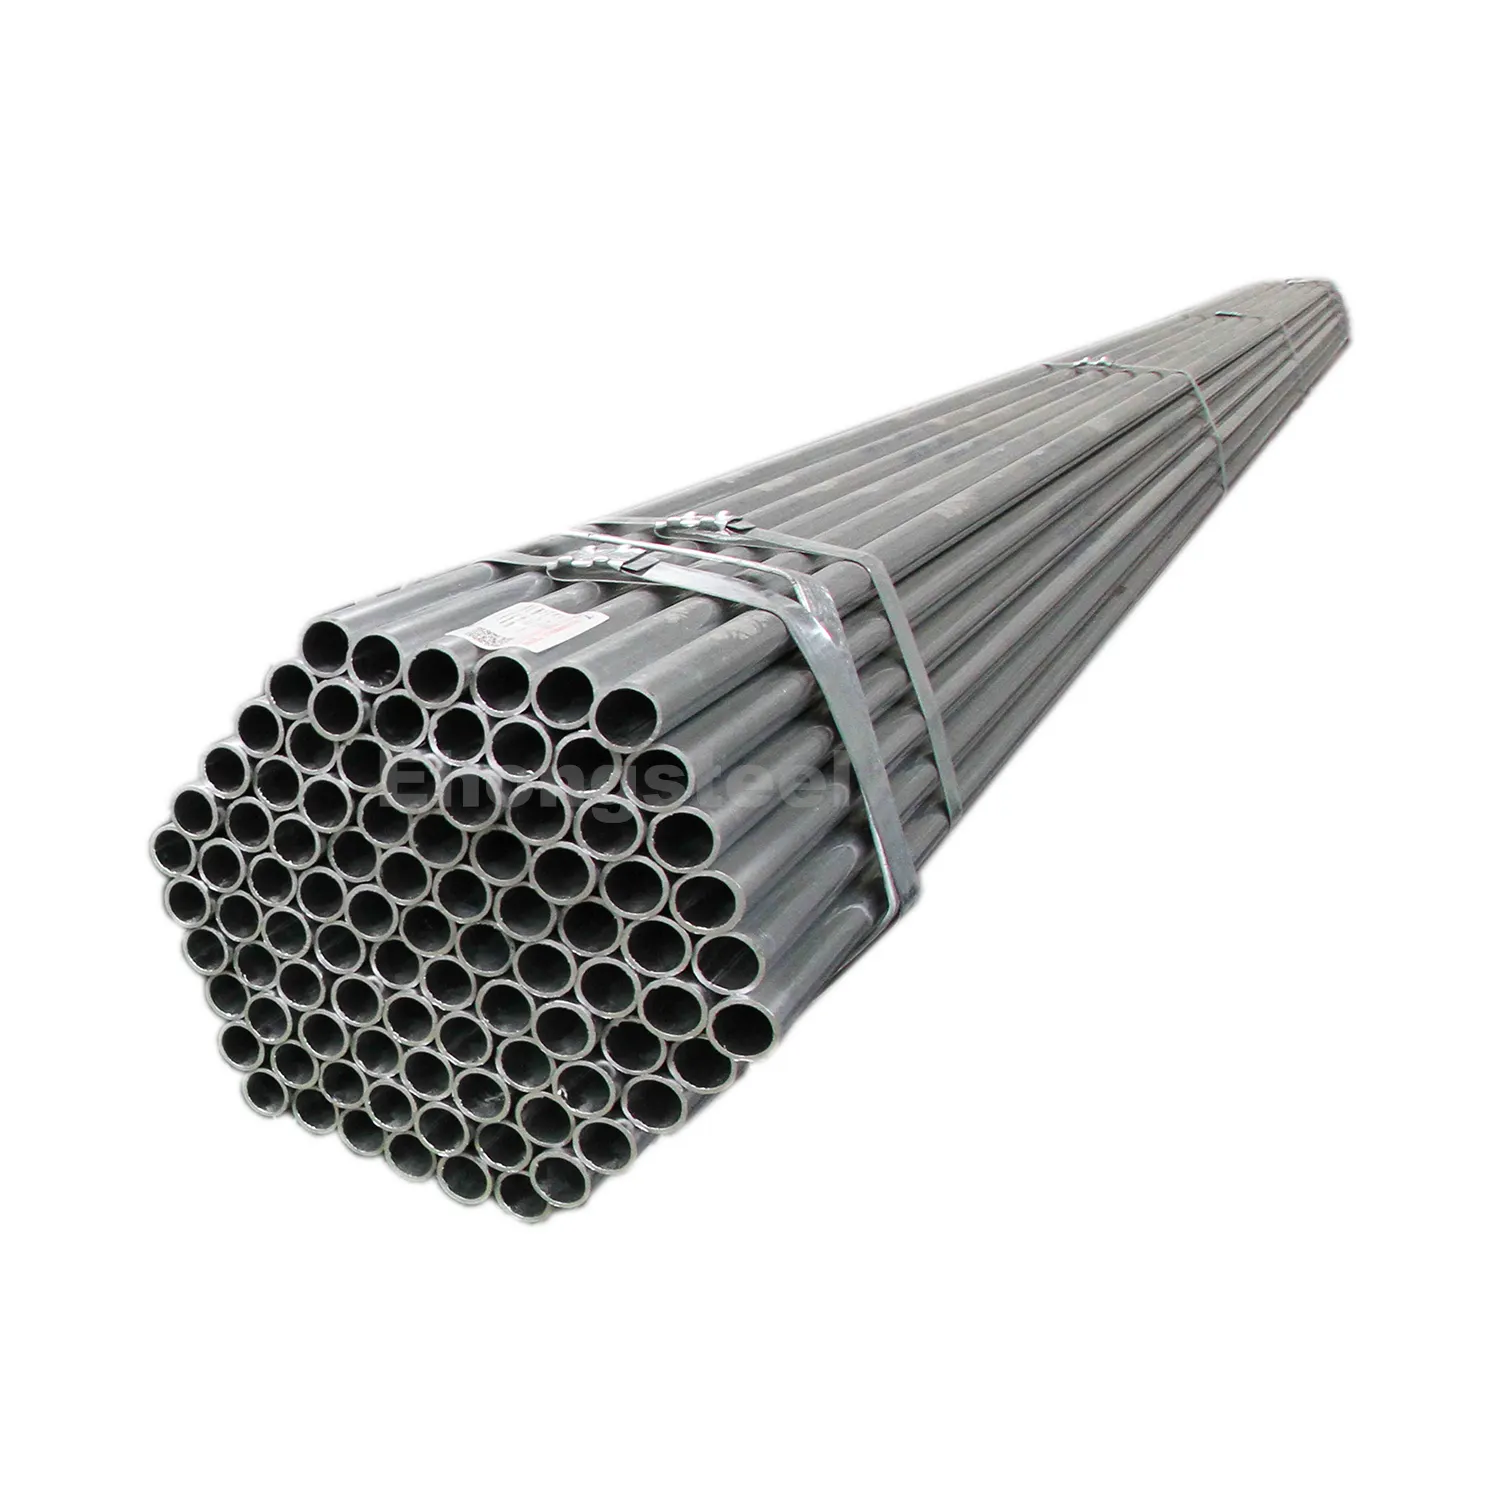 Ehong Steel tabung baja ERW Q195, kualitas tinggi untuk penggunaan Struktural